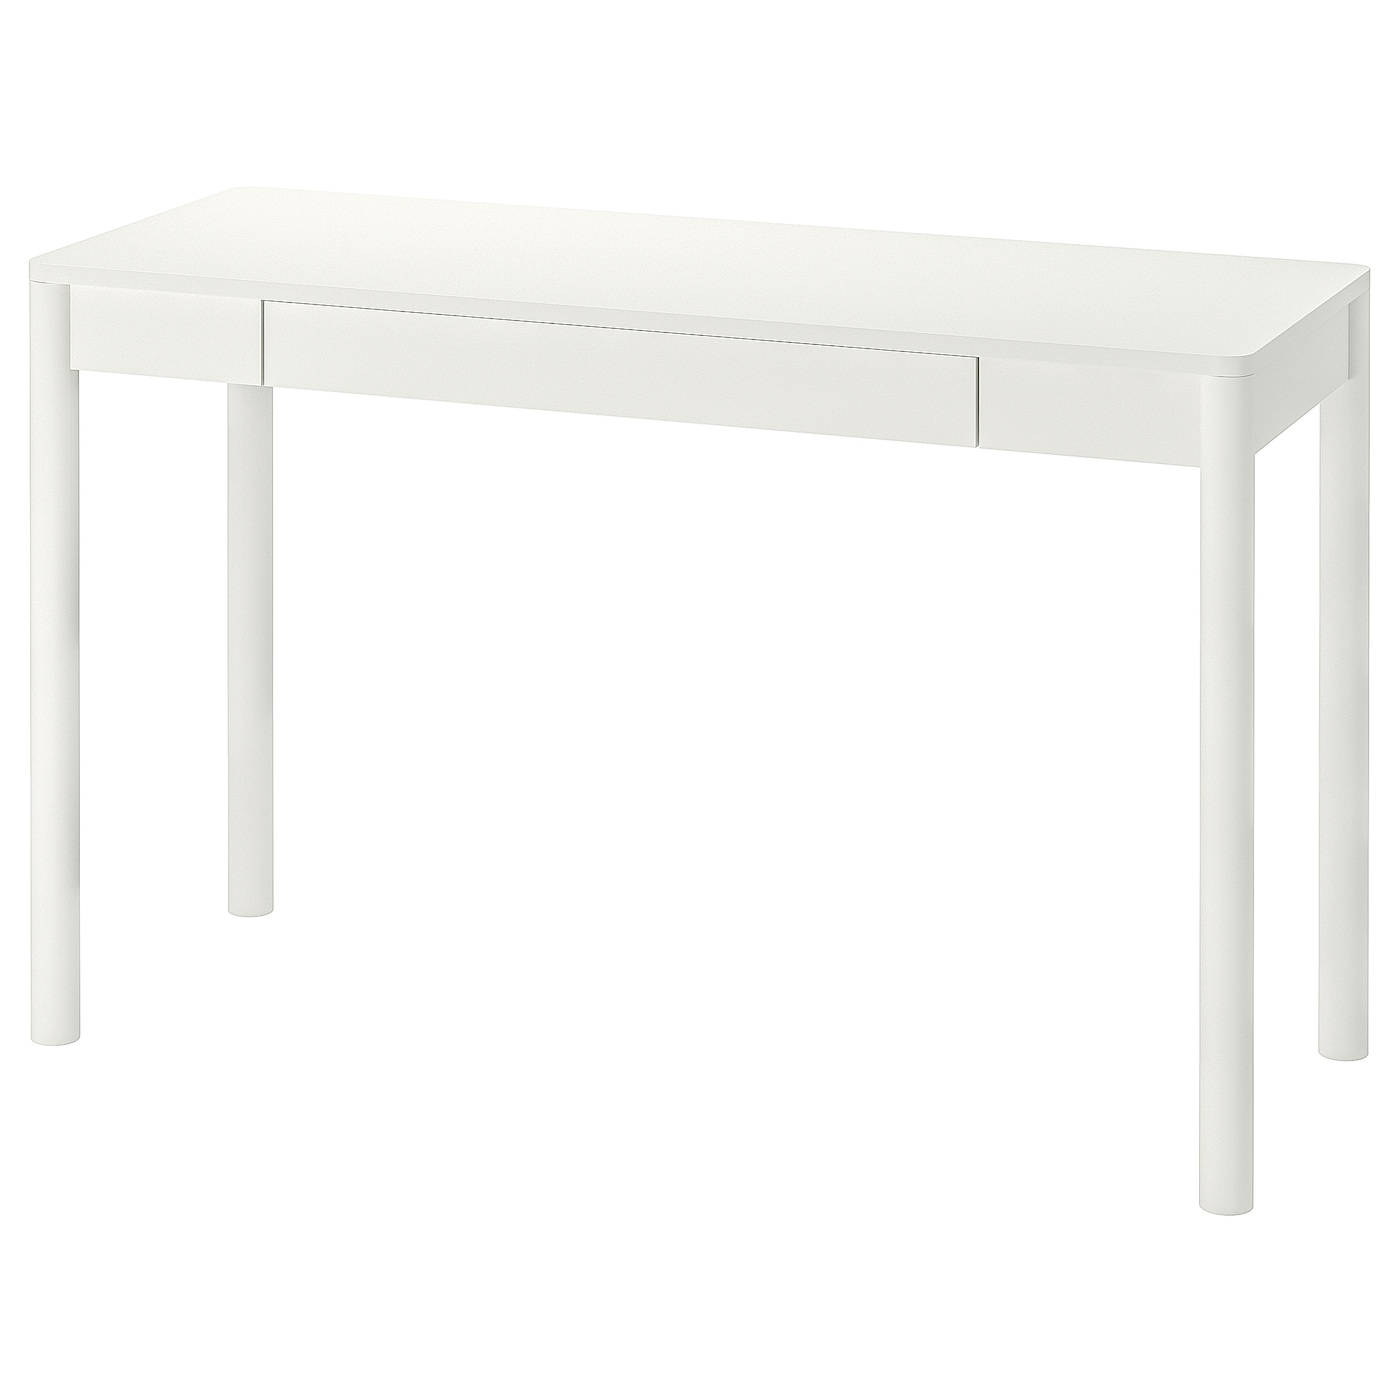 Письменный стол - IKEA TONSTAD, 120x75 см, белый, ТОНСТАД ИКЕА